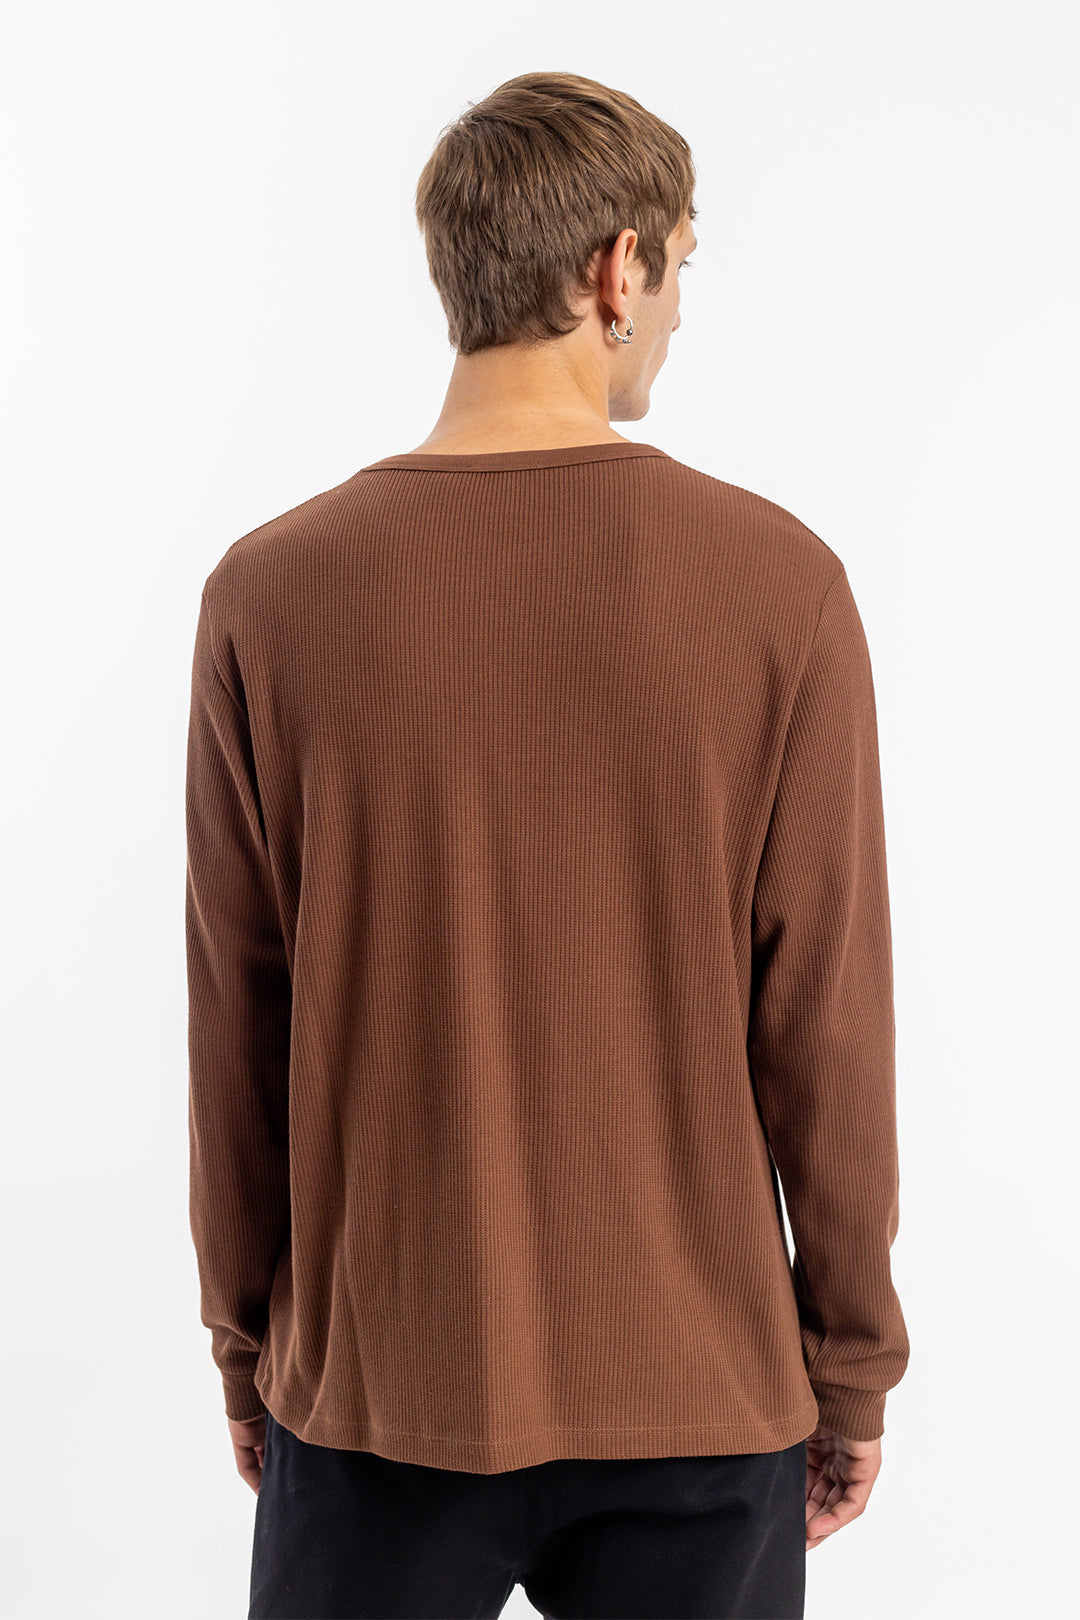 Chemise gaufrée marron à manches longues en coton biologique de Rotholz